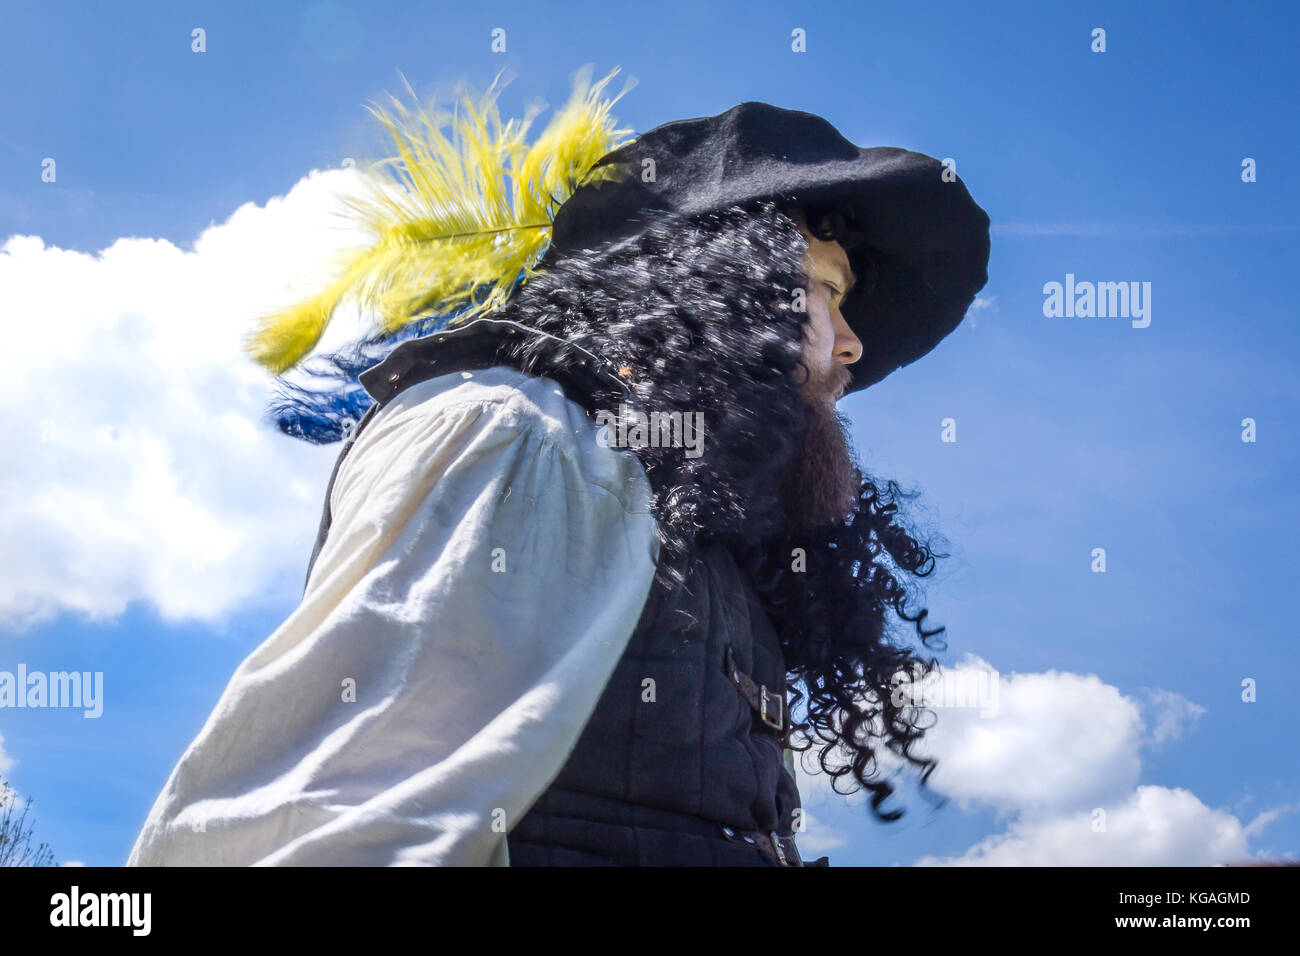 Mousquetaire un large chapeau et de long cheveux bouclés contre le ciel bleu, le Danemark, le 21 mai, 2017 Banque D'Images